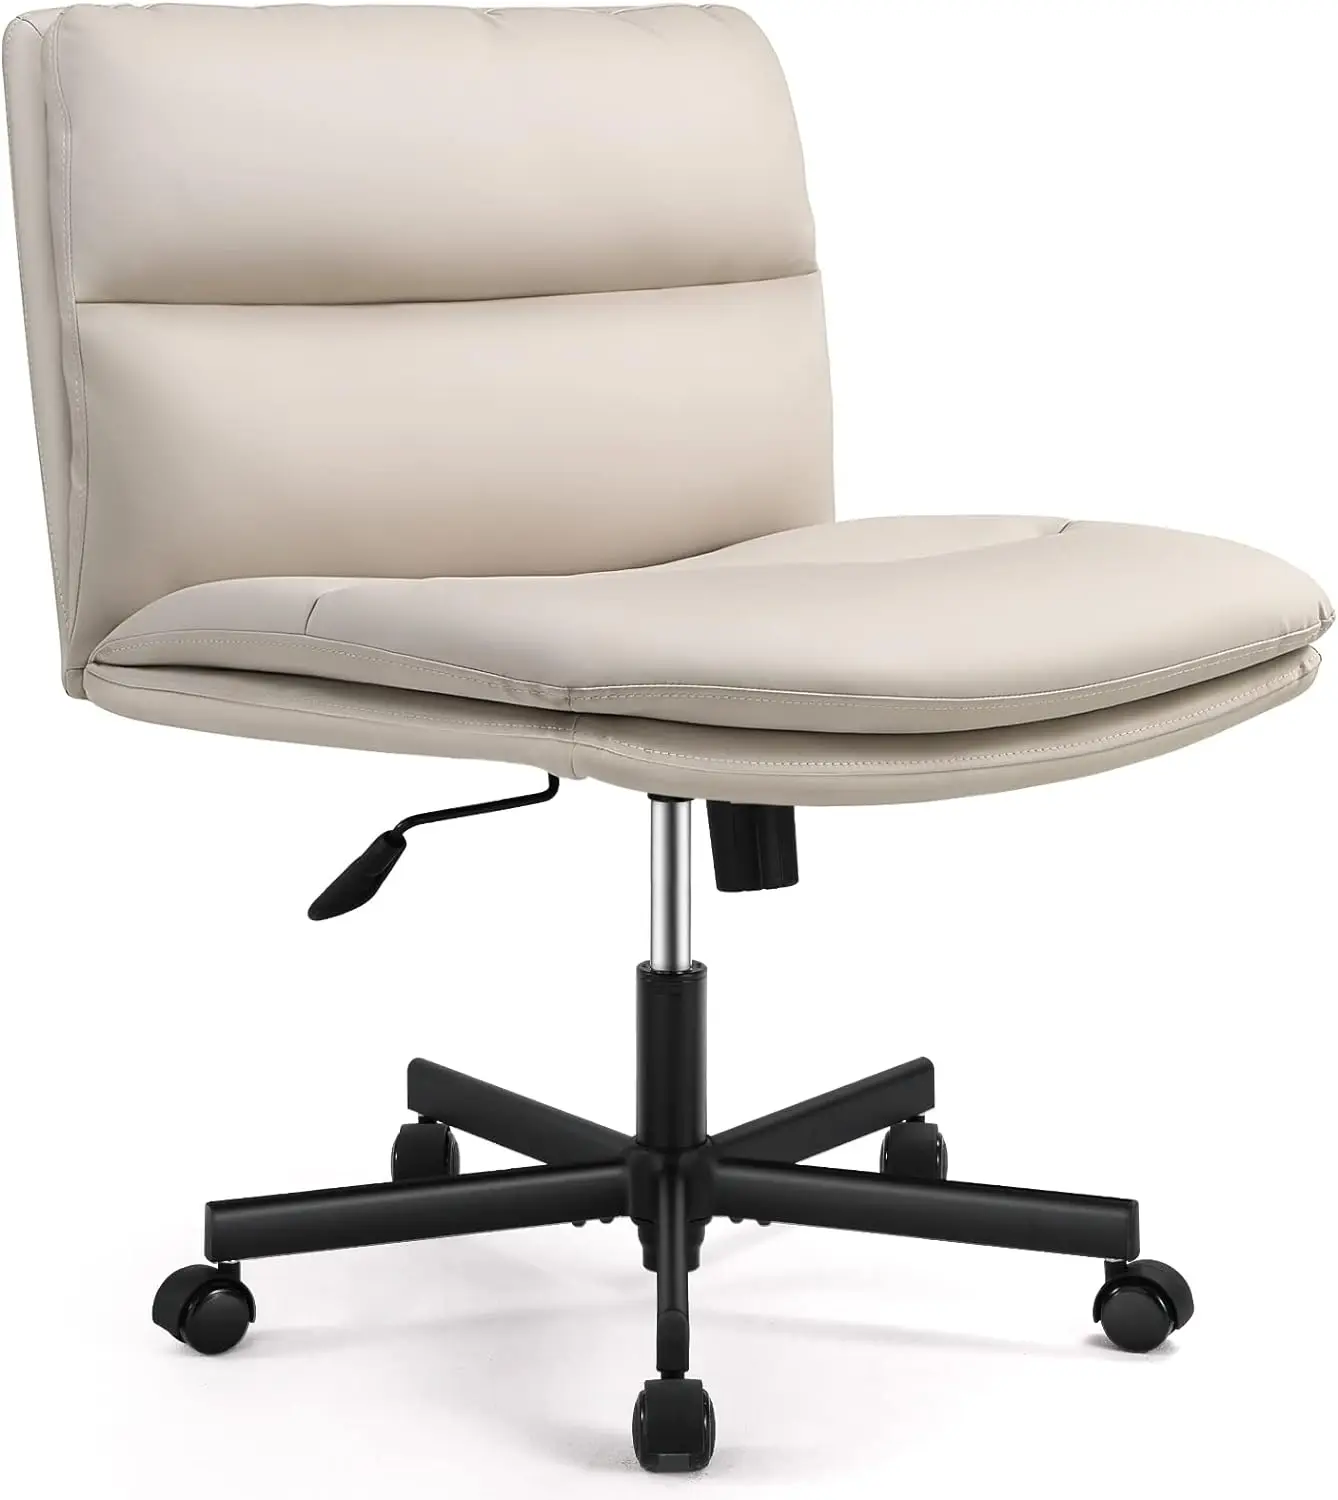 

Офисные стулья без подлокотников EMIAH, стул с колесами из искусственной кожи с мягкой подкладкой, эргономичный компьютерный стул со средней спинкой для дома и офиса